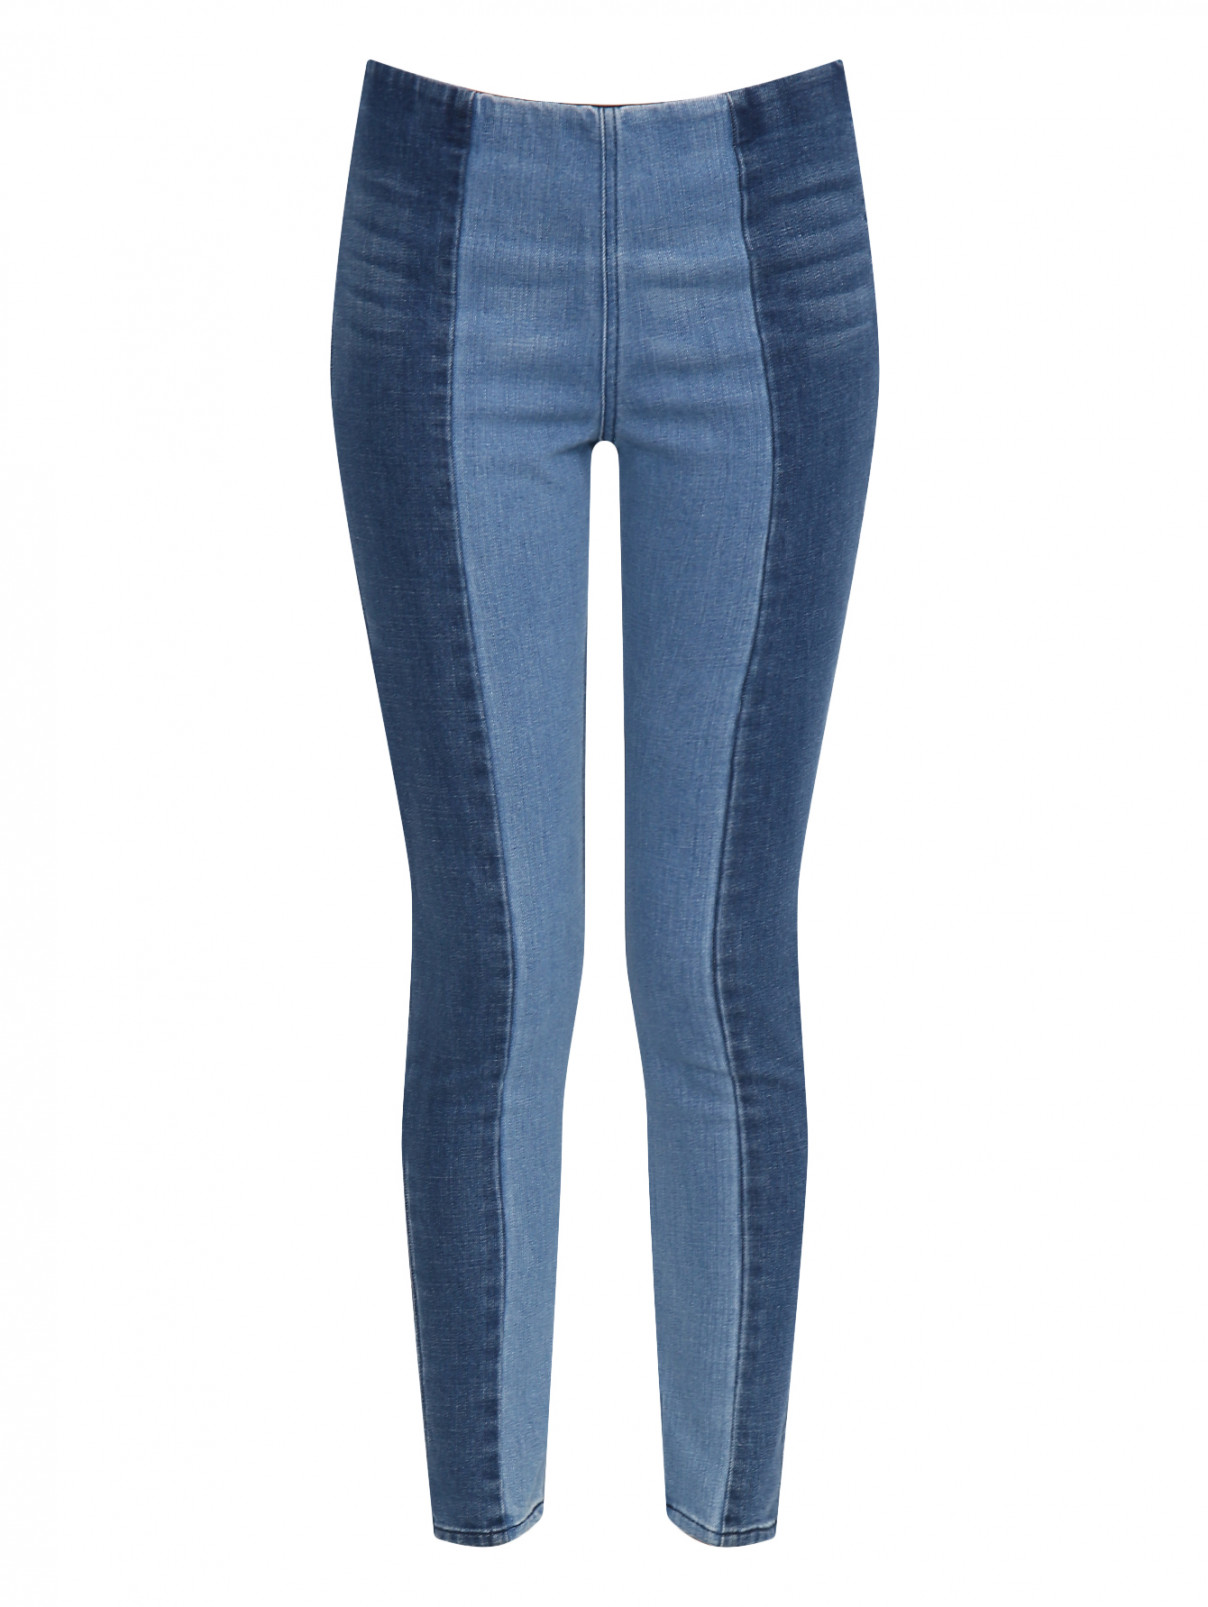 Узкие джинсы из светлого денима By Malene Birger  –  Общий вид  – Цвет:  Синий